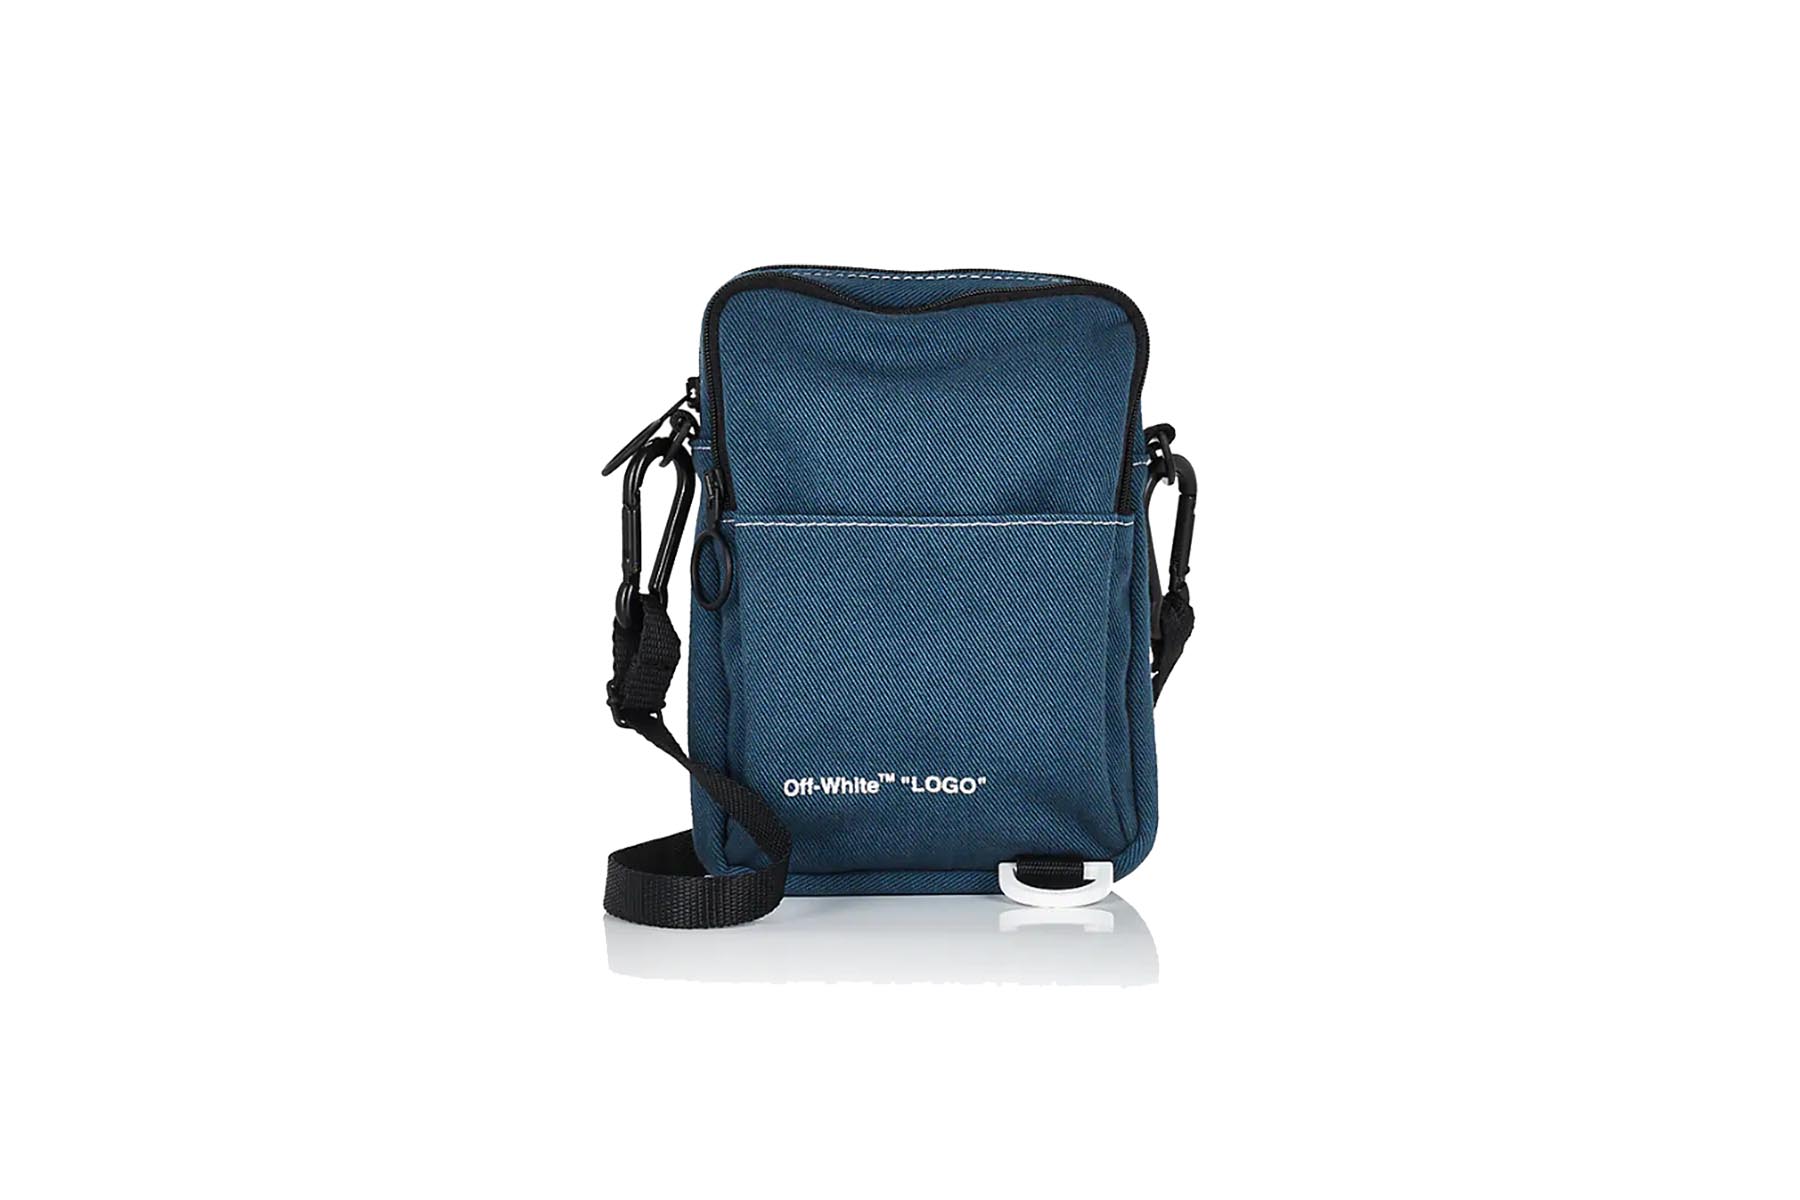 blue denim camera bag